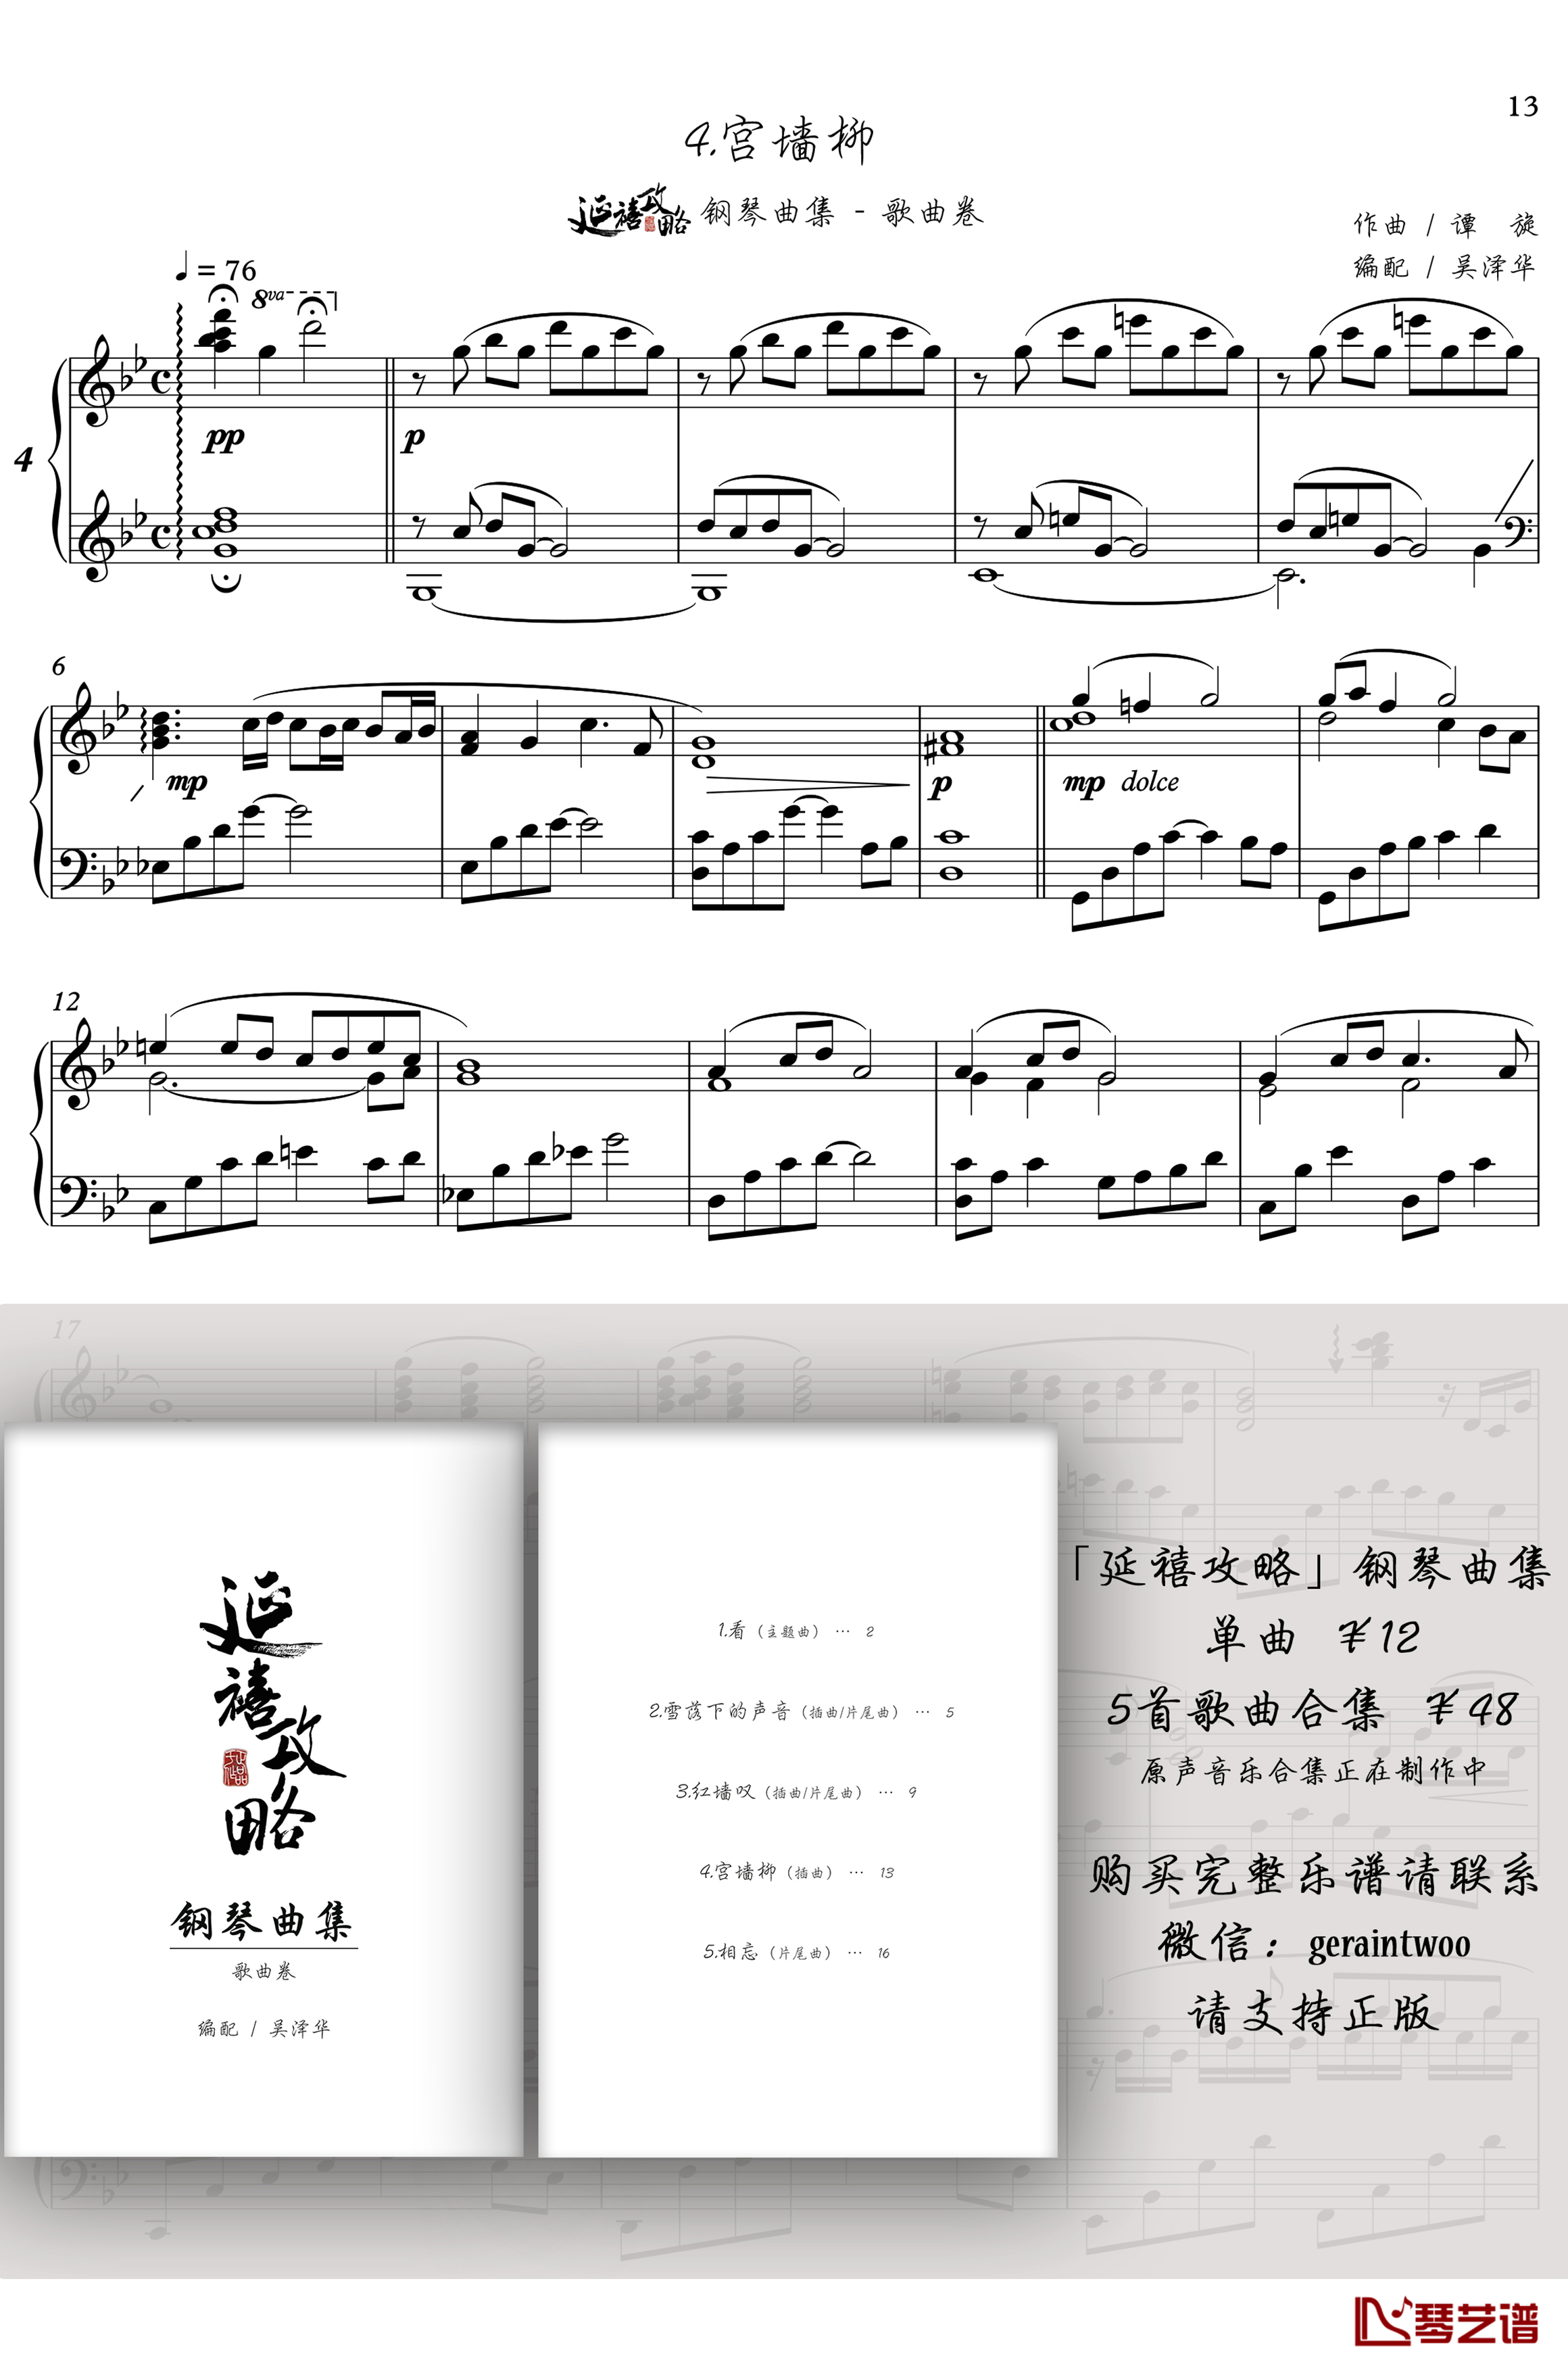 宫墙柳钢琴谱-「延禧攻略」插曲-李春嫒1